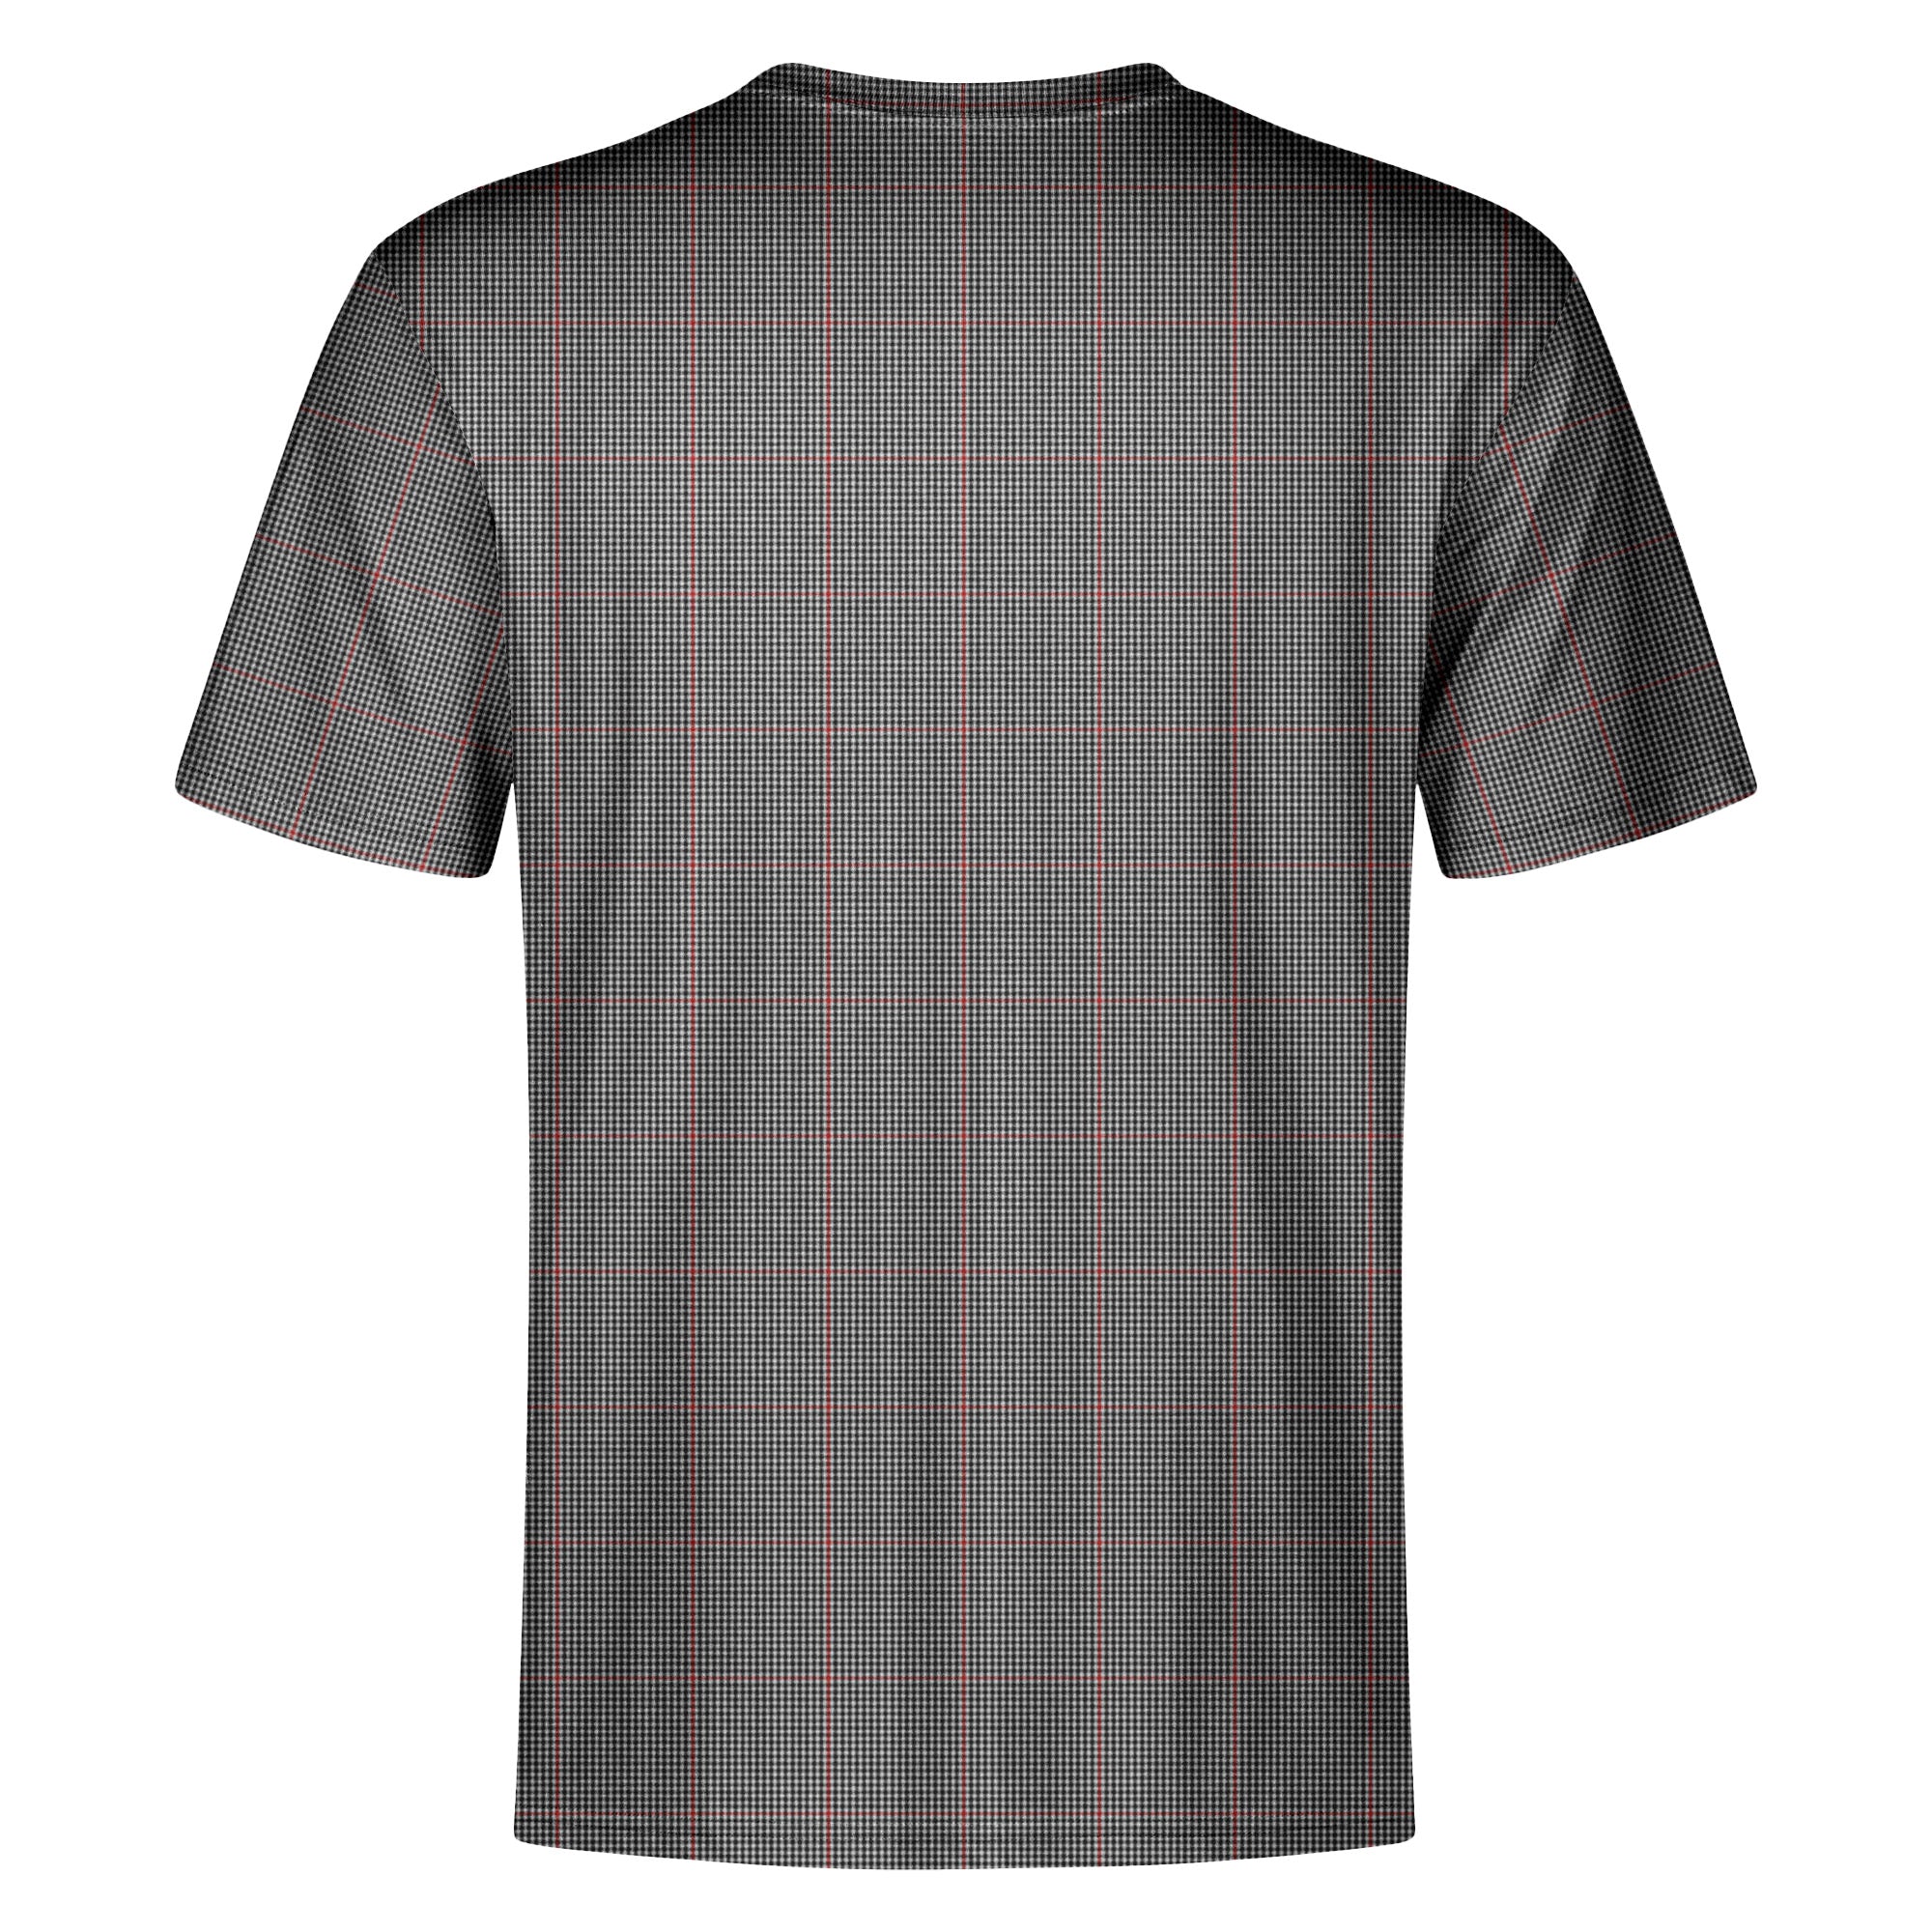 Shepherd Tartan Crest T-shirt